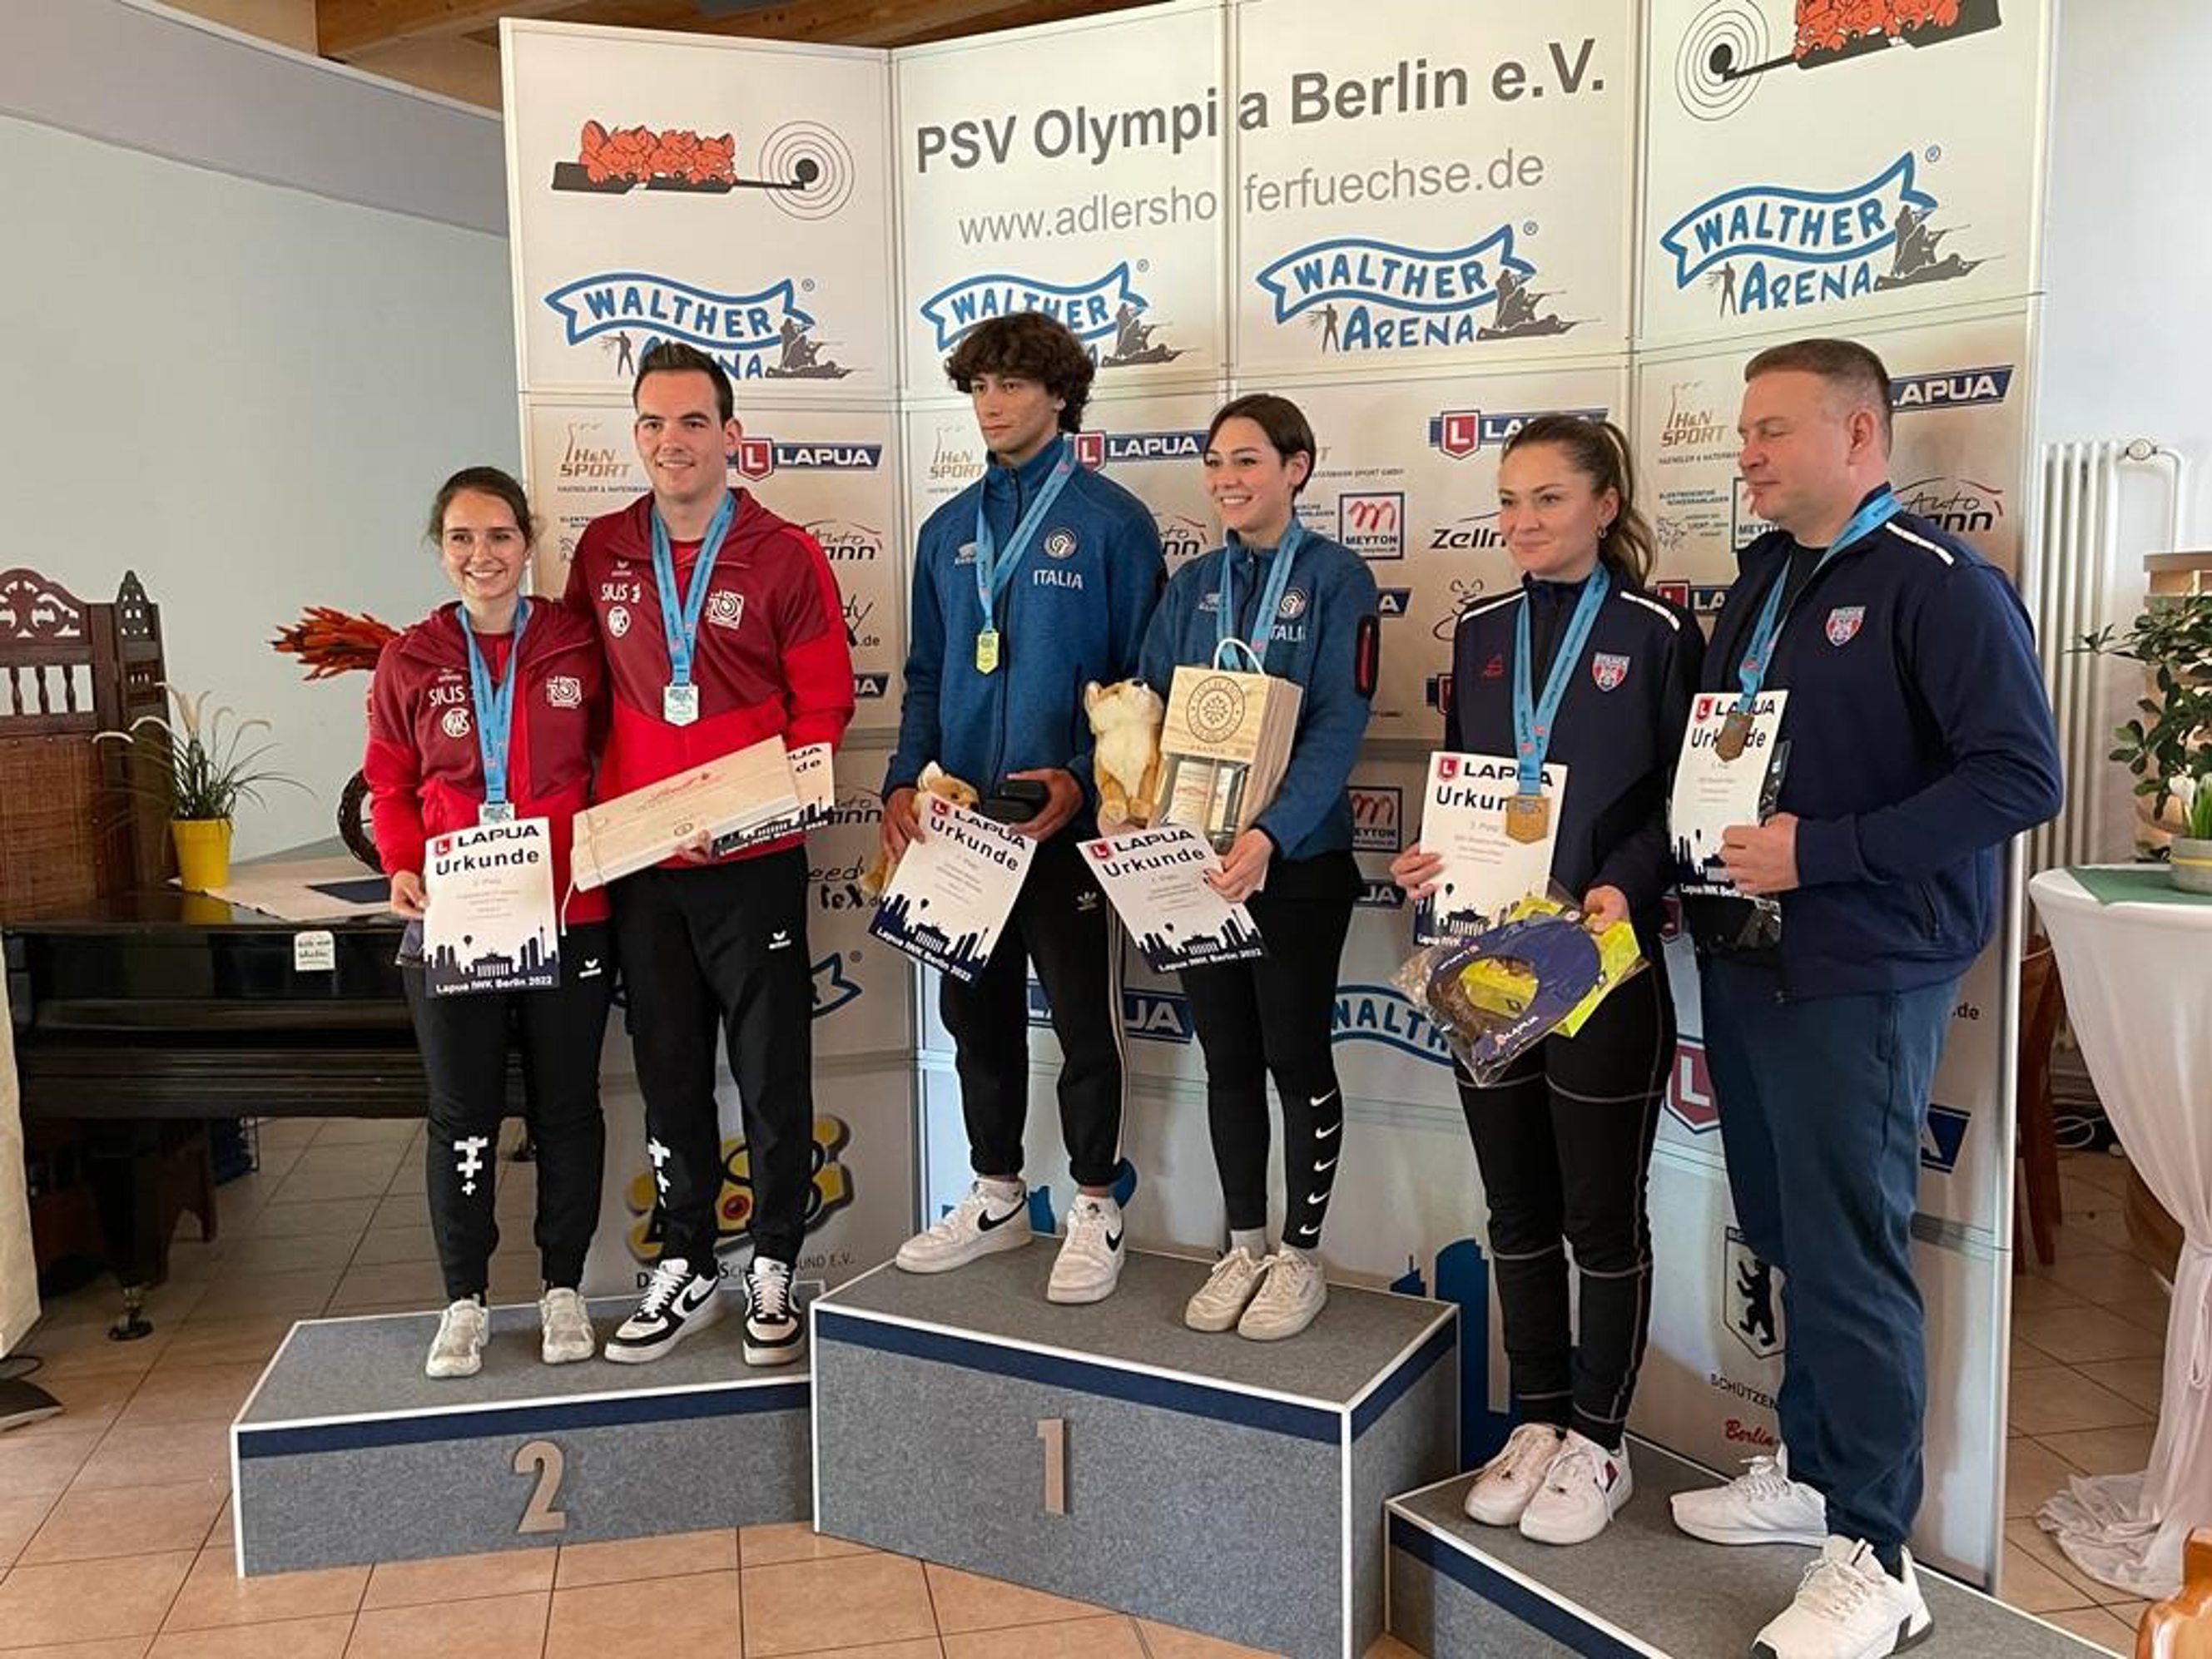 Das Podest: Silber für Schweiz 2 mit Annina Tomaschett und Fabio Wyrsch. Gold ging an Italien, Bronze holte sich CSA Steaua mit Altmeister Peter Sidi (ganz rechts im Bild).